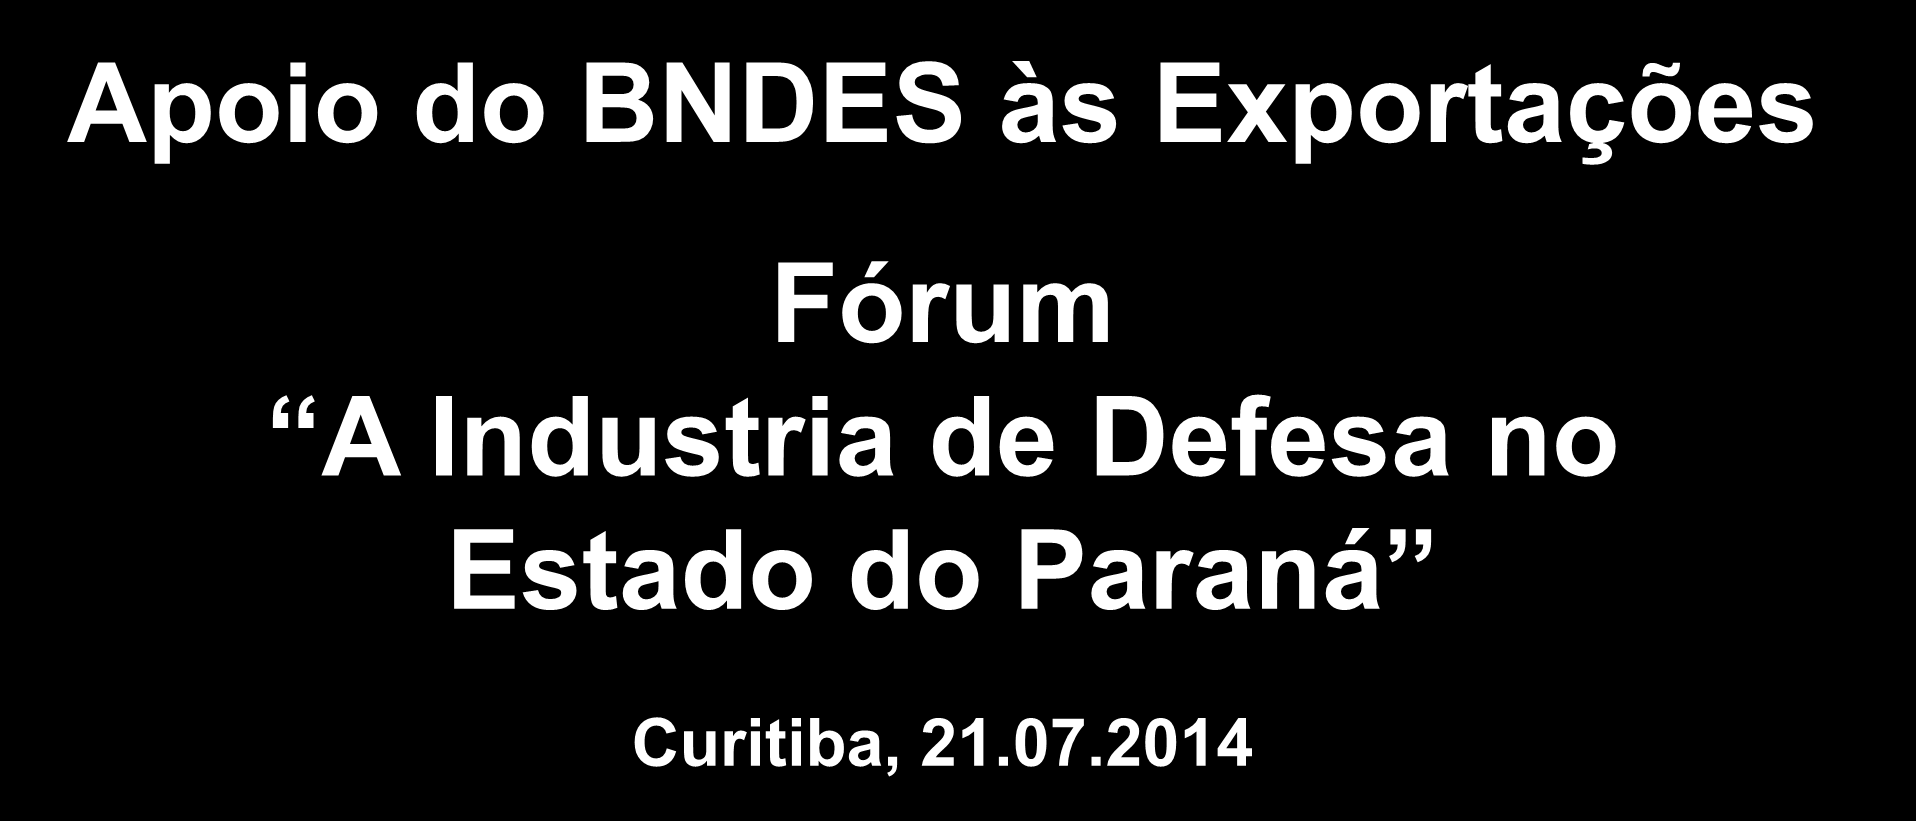 Apoio do BNDES às Exportações Fórum A Industria de Defesa no Estado do Paraná Curitiba, 21.07.